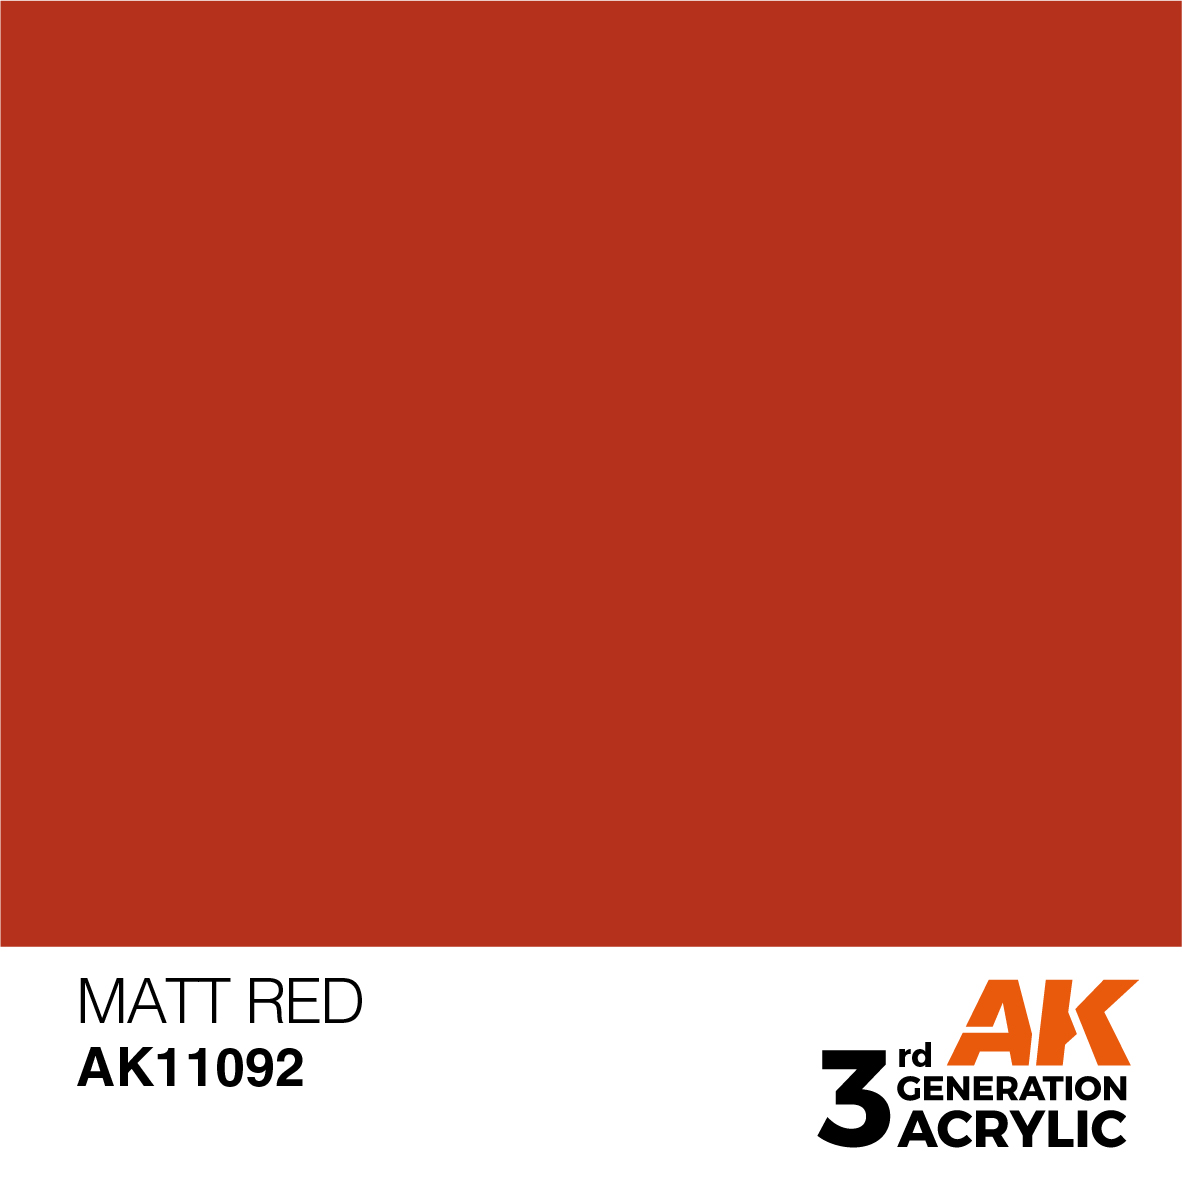 MATT RED – STANDARD